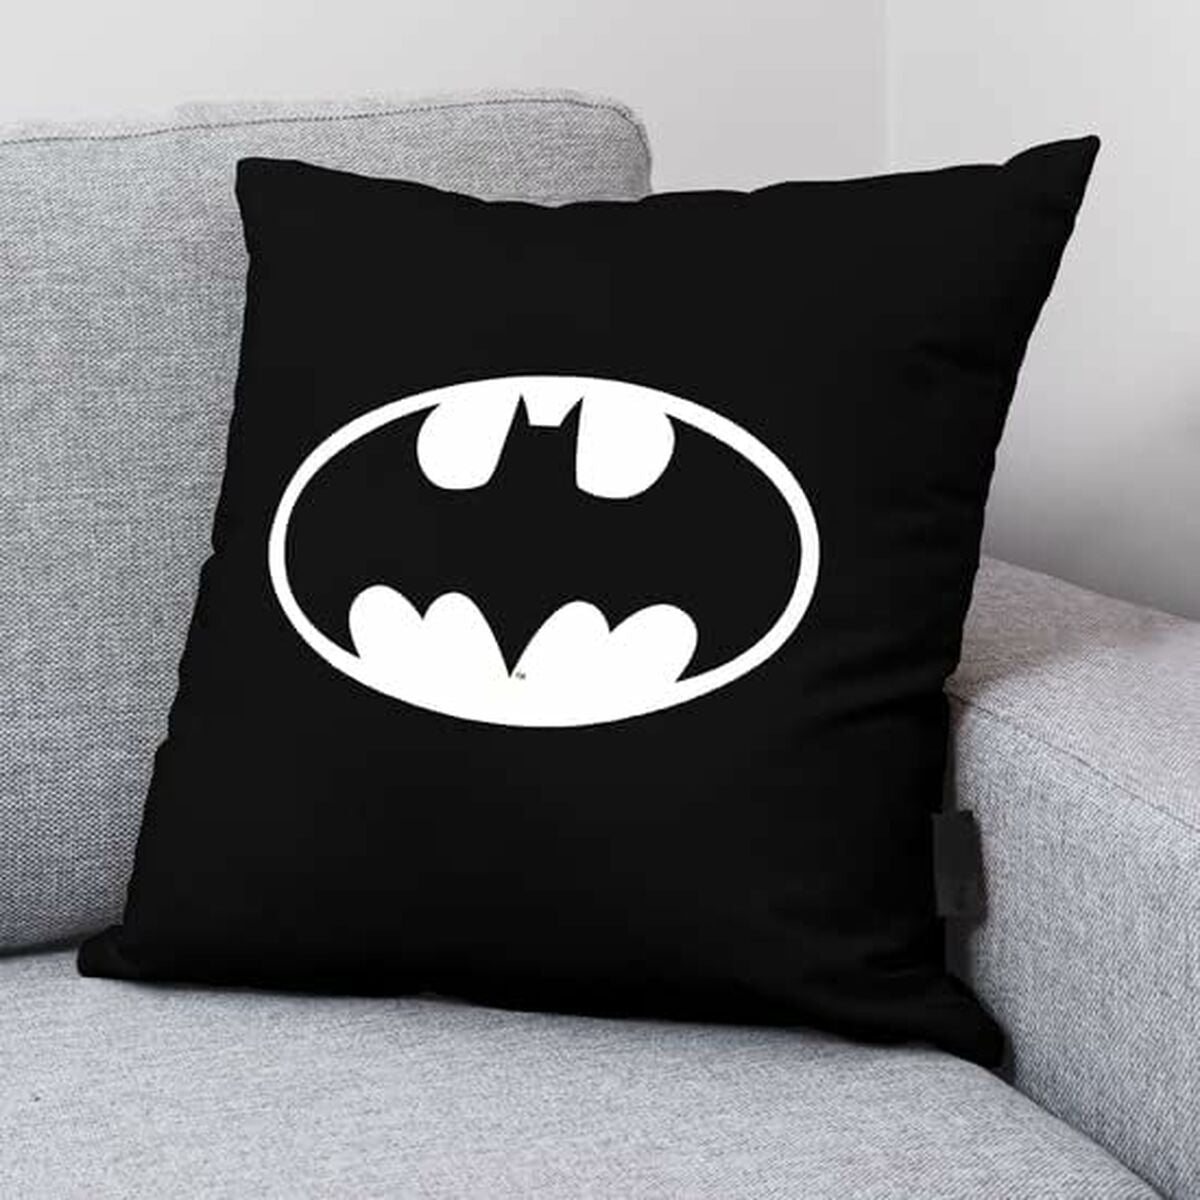 Cushion cover Batman Batman Basic A Black 45 x 45 cm